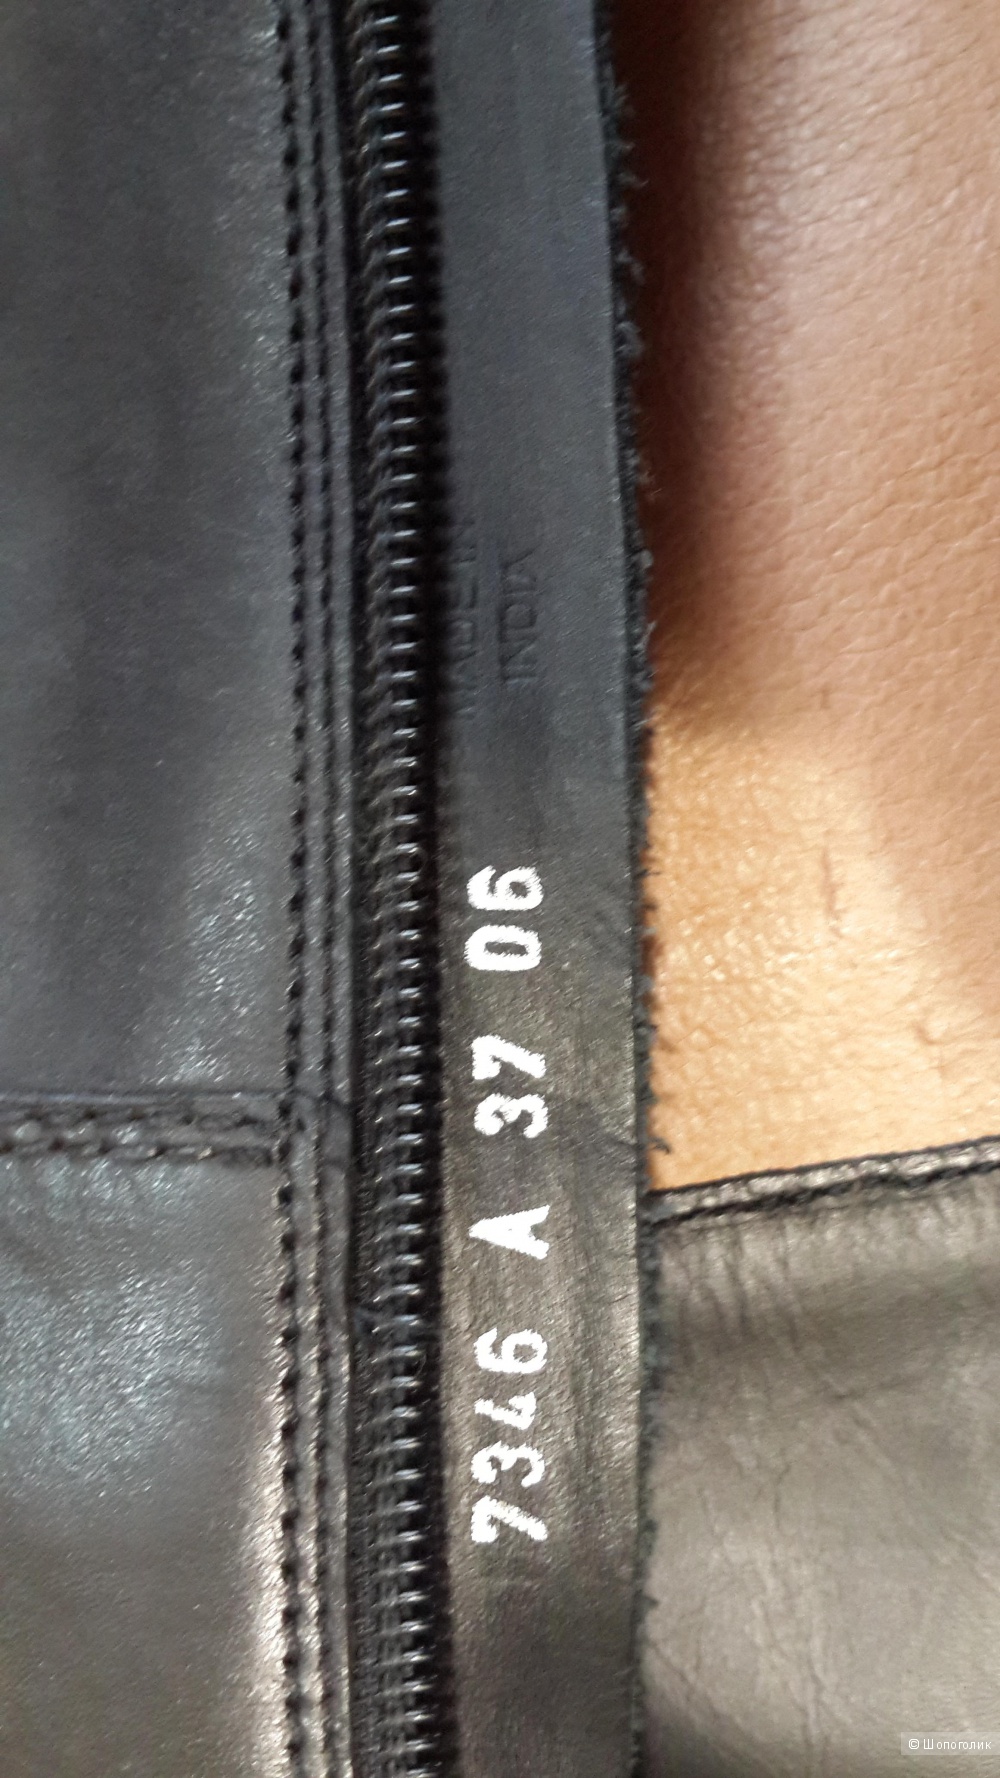 Красивые кожаные сапоги в жоккейском стиле в отличном состоянии, на ногу 24,5-25 см Geox черного цвета